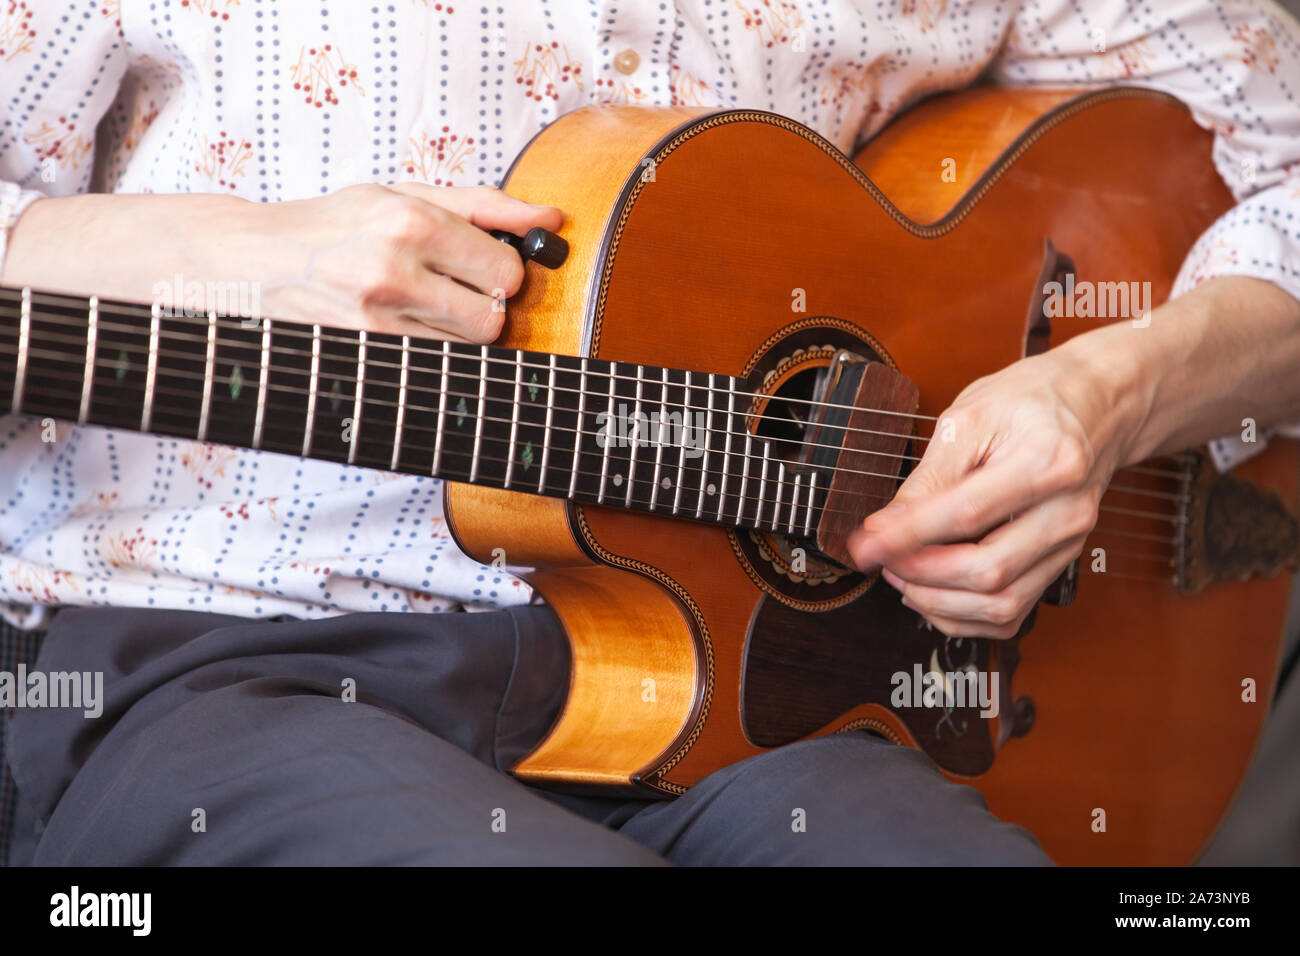 Guitariste musiques vintage guitare acoustique, close-up photo avec focus sélectif sur les mains Banque D'Images